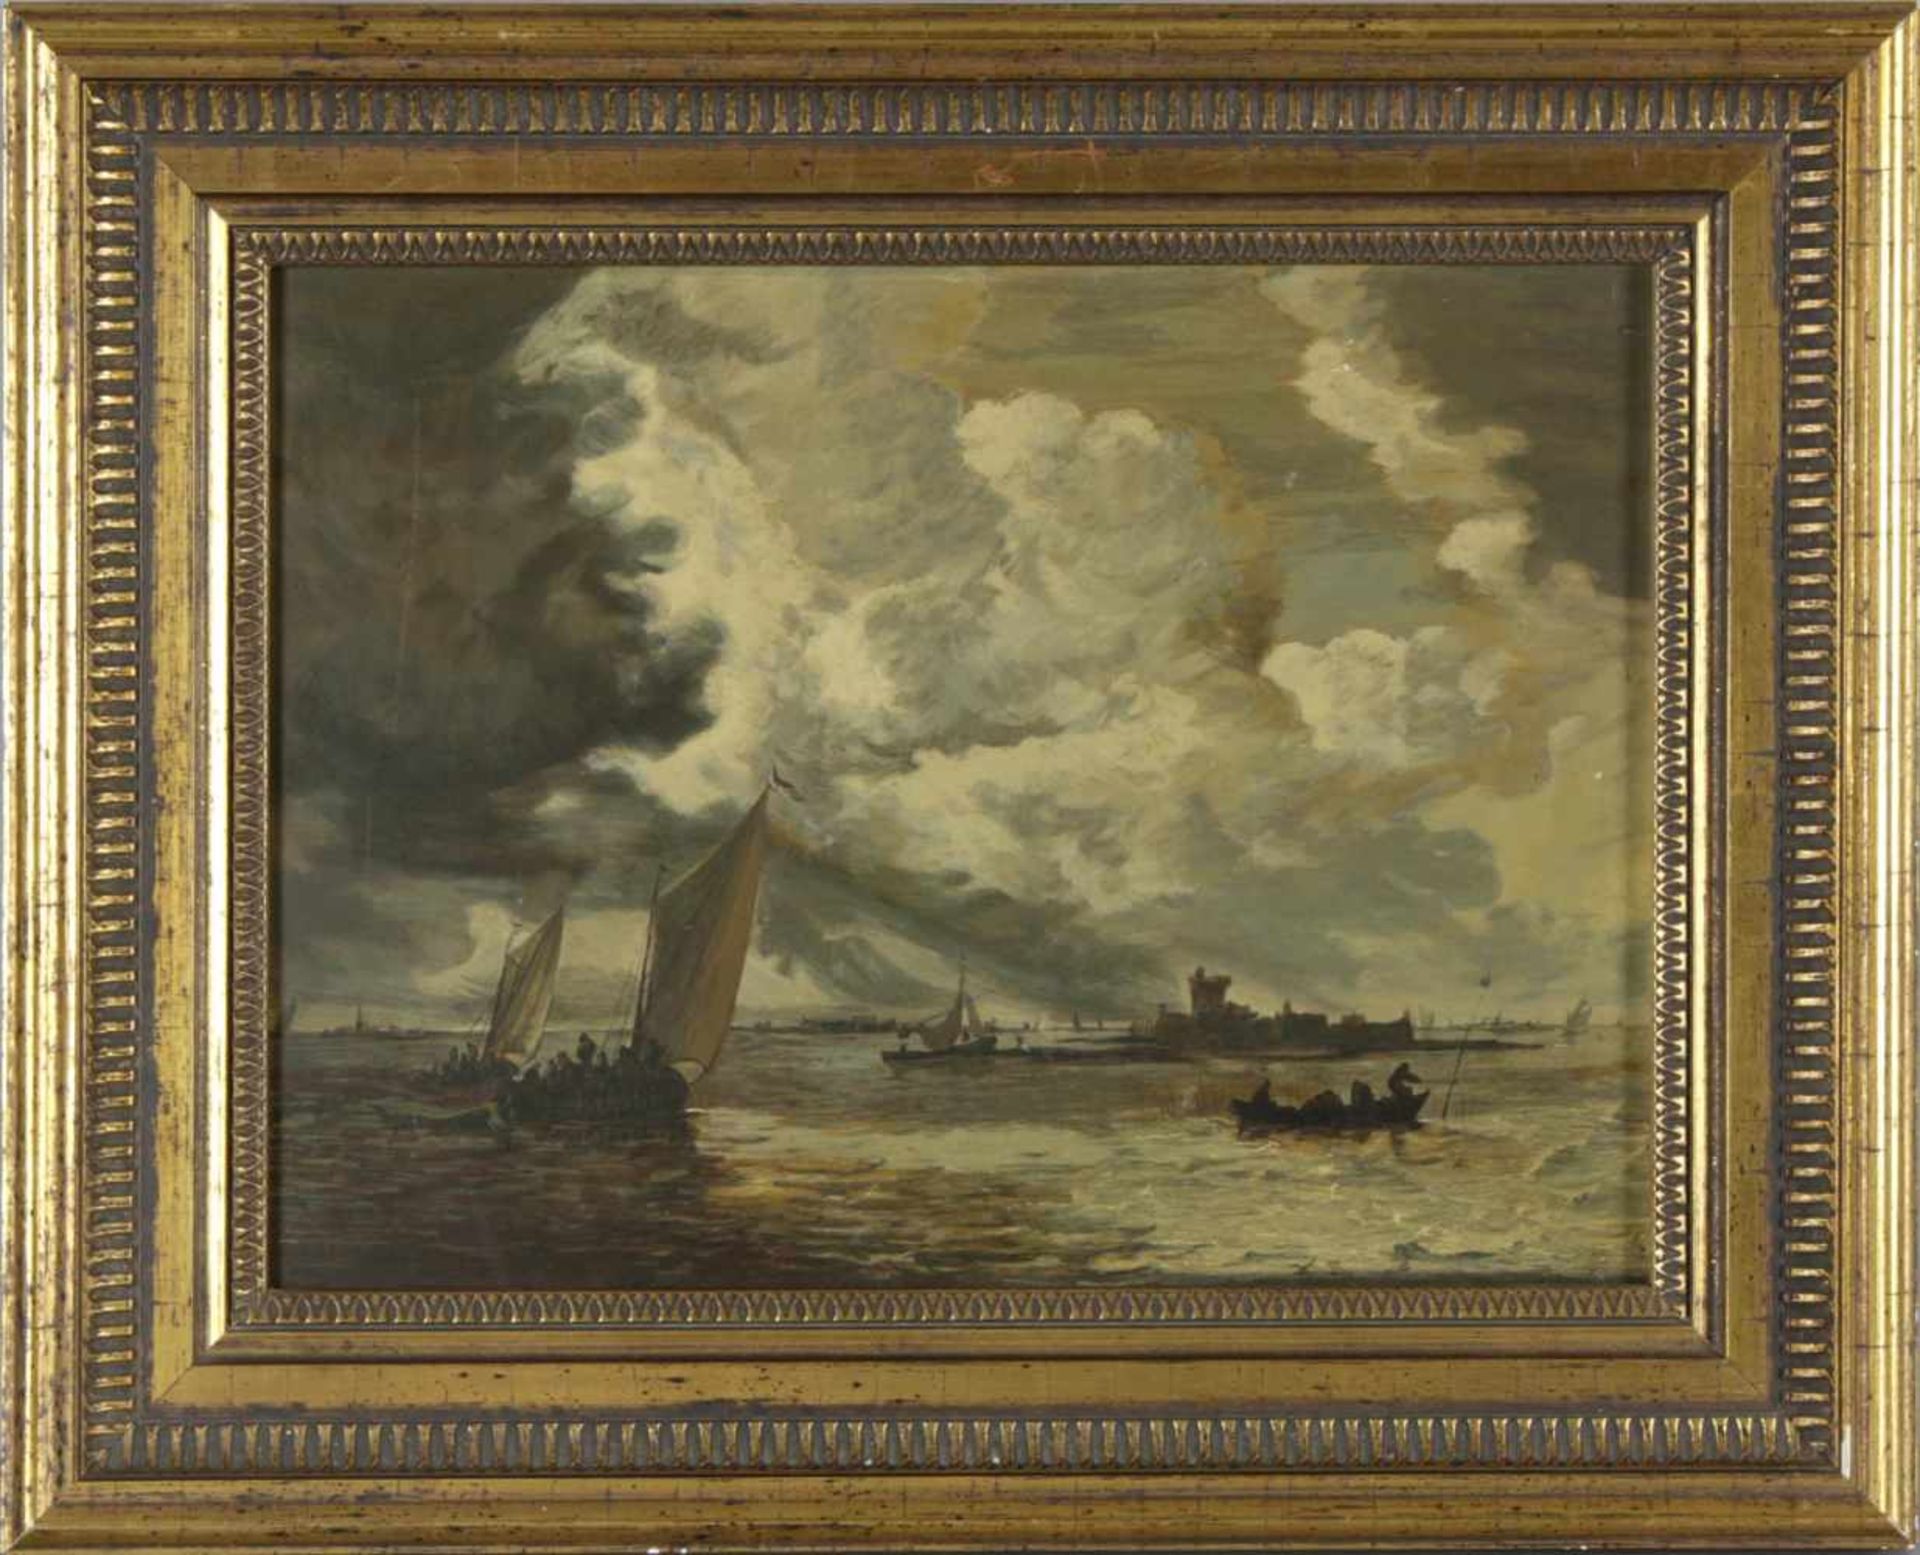 Dietz-Replik nach dem Gemälde "Flussmündung" von Jan van Goyen (Kunsthalle Bremen), auf